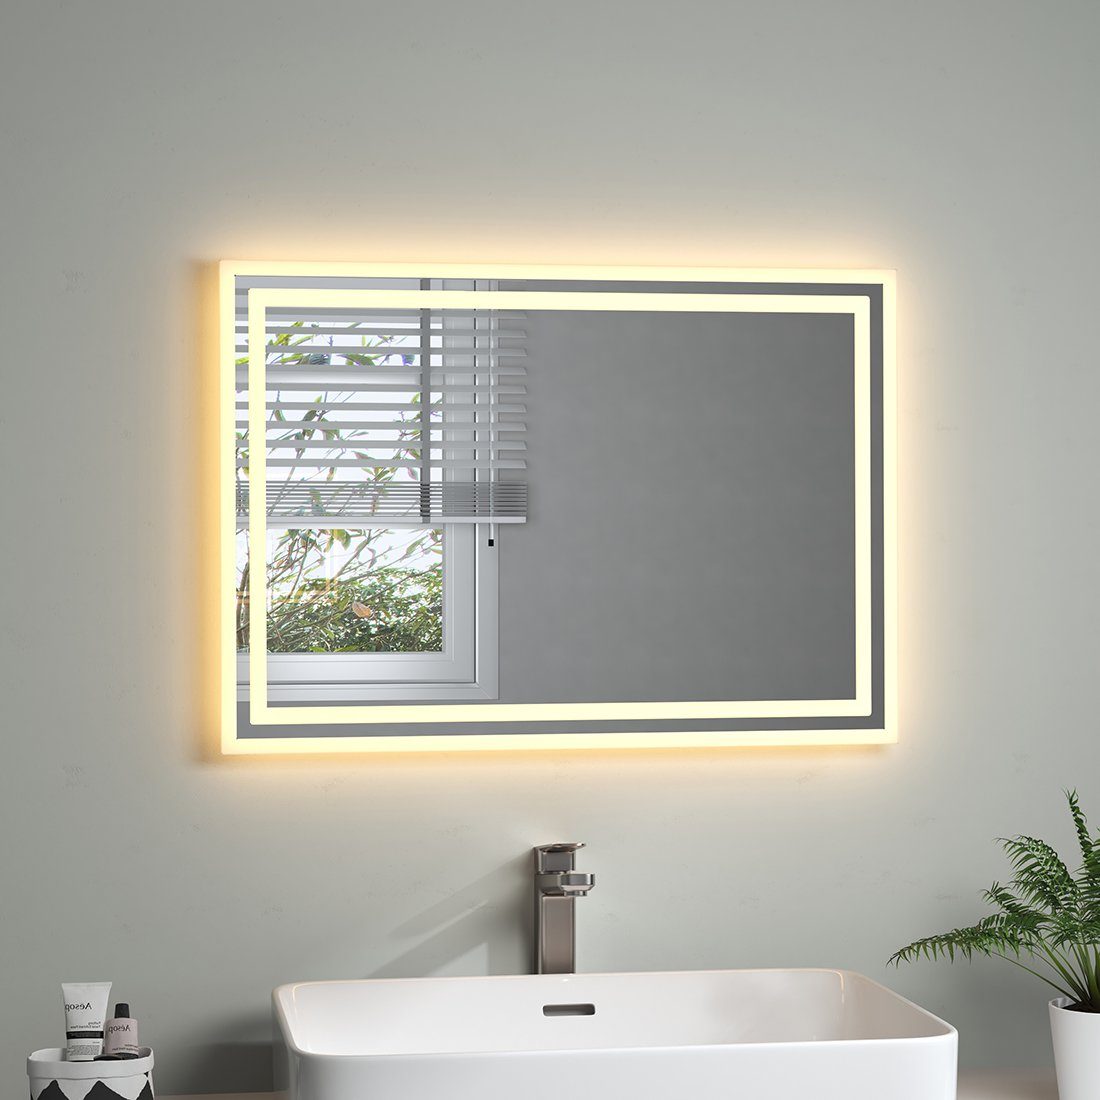 S'AFIELINA Badspiegel Rechteckiger LED Badspiegel Badezimmer Wandschalter Spiegel, 3000K Warmweiß,Energiesparend, Wandmontage,IP44